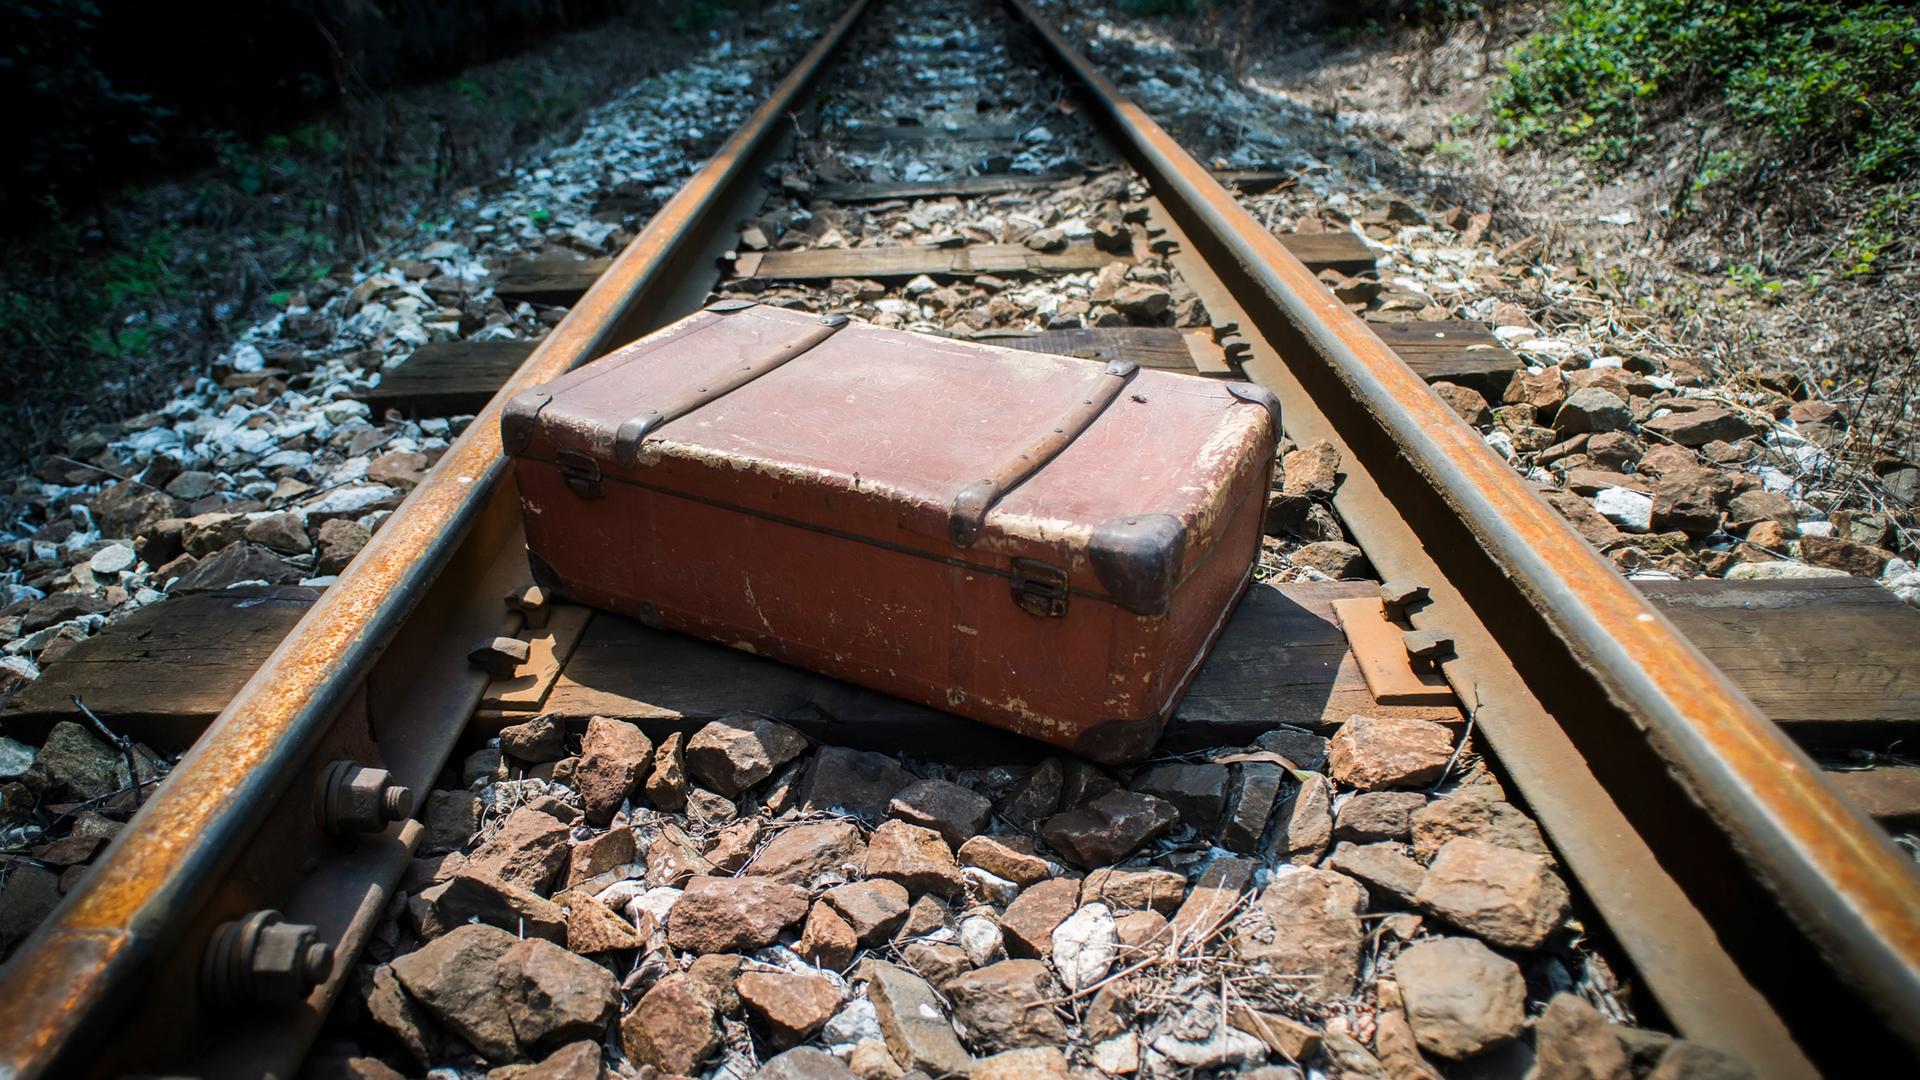 Gewaltsame Abschiebung durch die Nationalsozialisten: Blick auf Bahngleise und einen liegen gebliebenen Koffer